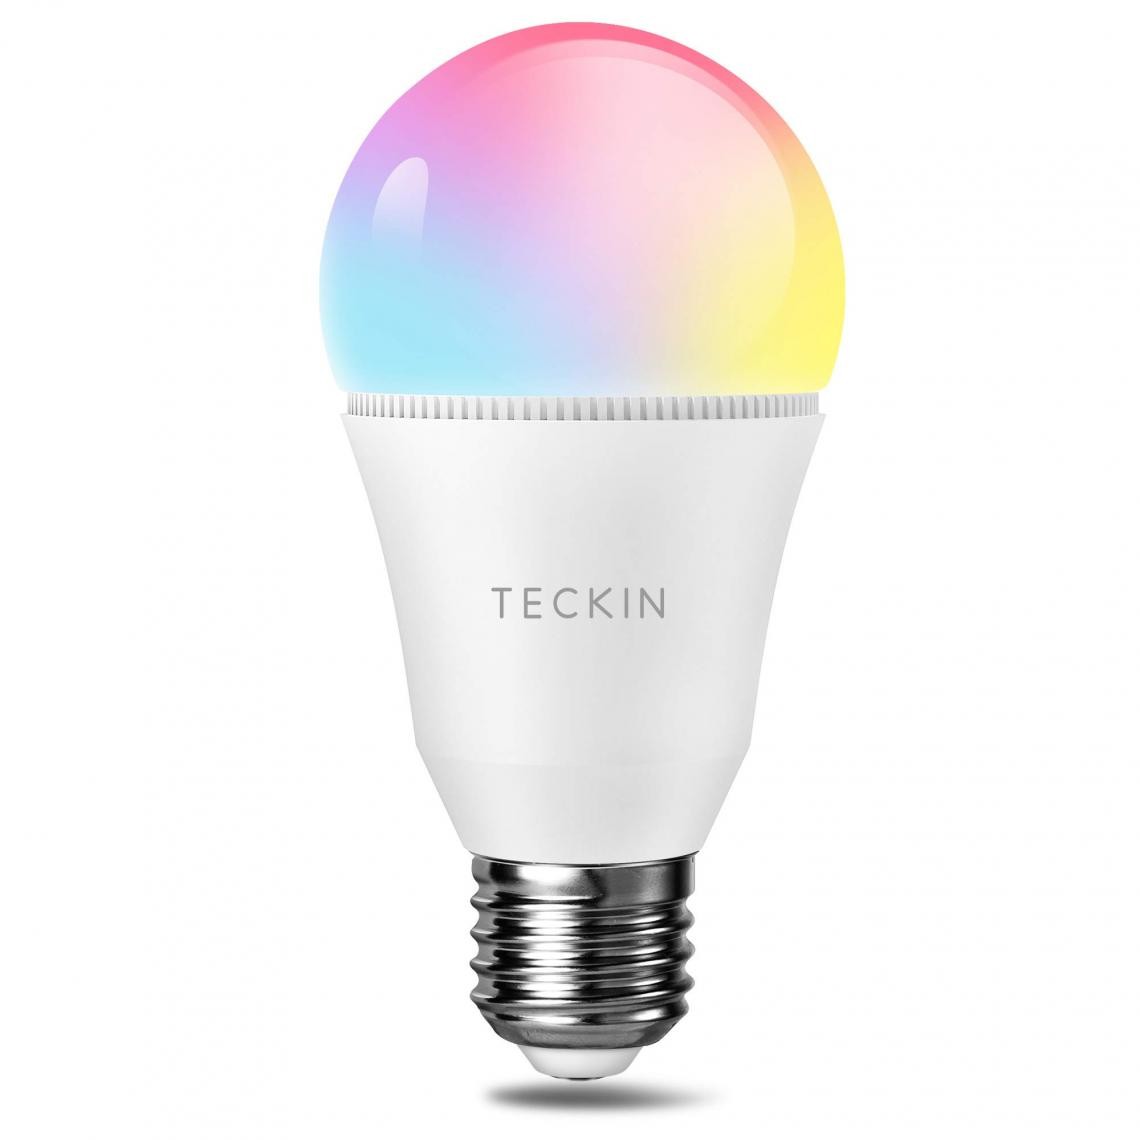 Teckin - TECKIN Ampoule Alexa WiFi LED E26 A19 SB60-1, Ampoule Intelligente, Compatible avec Alexa, Google Home, Multicolore, Dimmable, Lumière Chaude et Froide, 7.5W 800LM. 1Pc - Ampoules LED